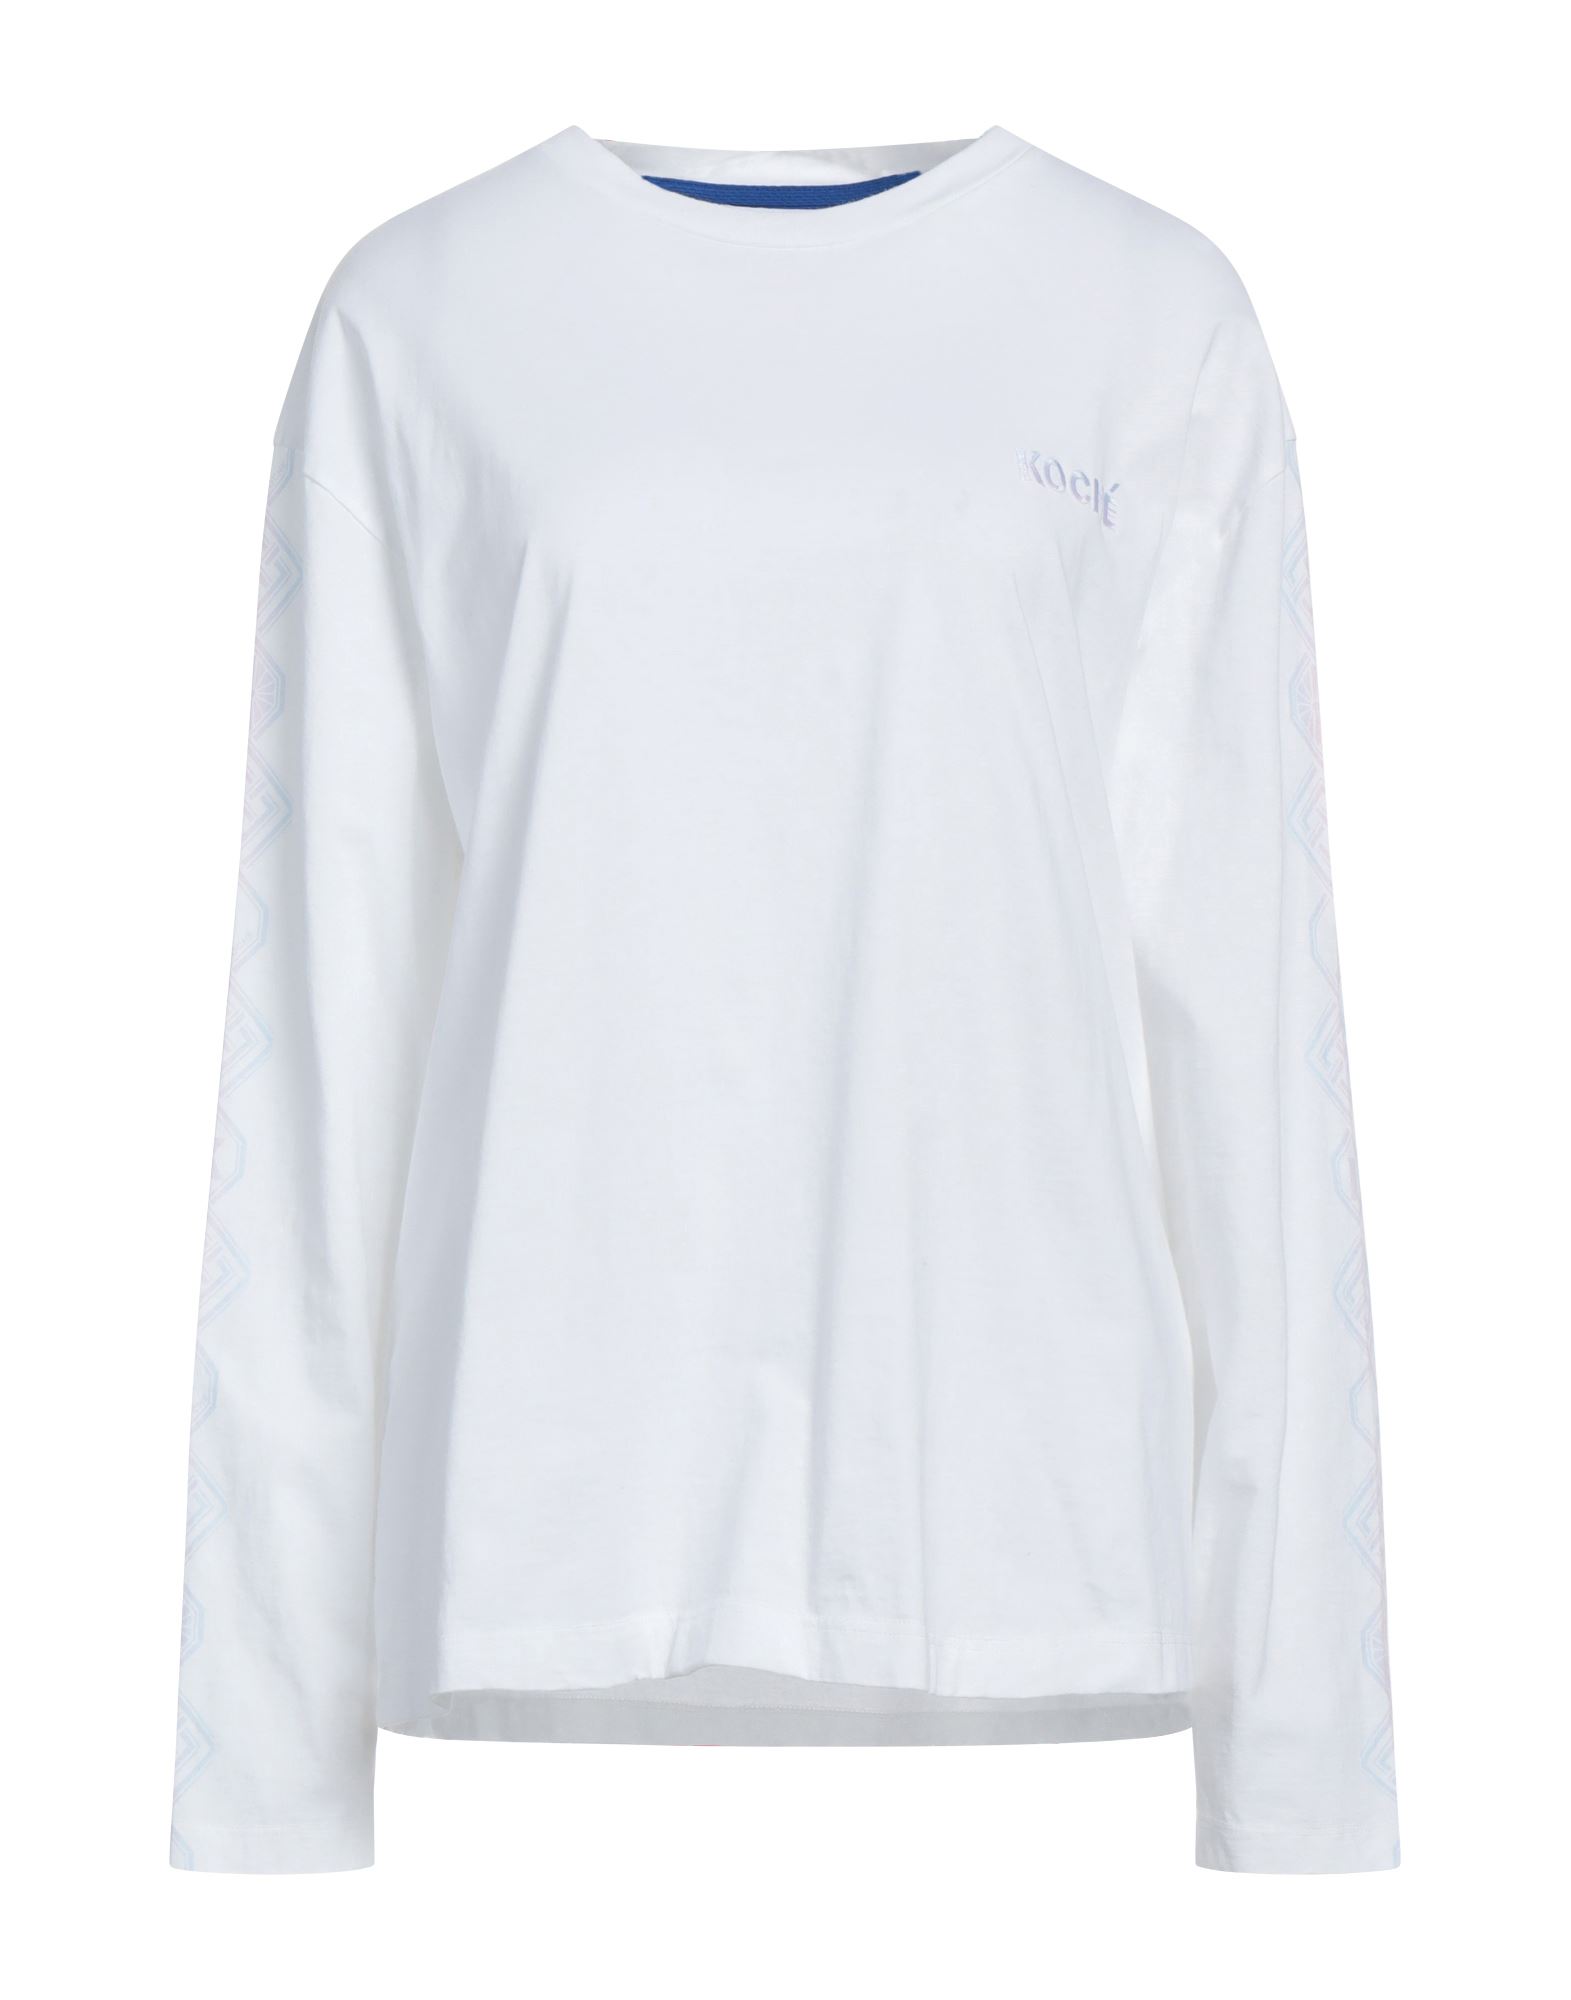 Koché Woman T-shirt White Size L Cotton